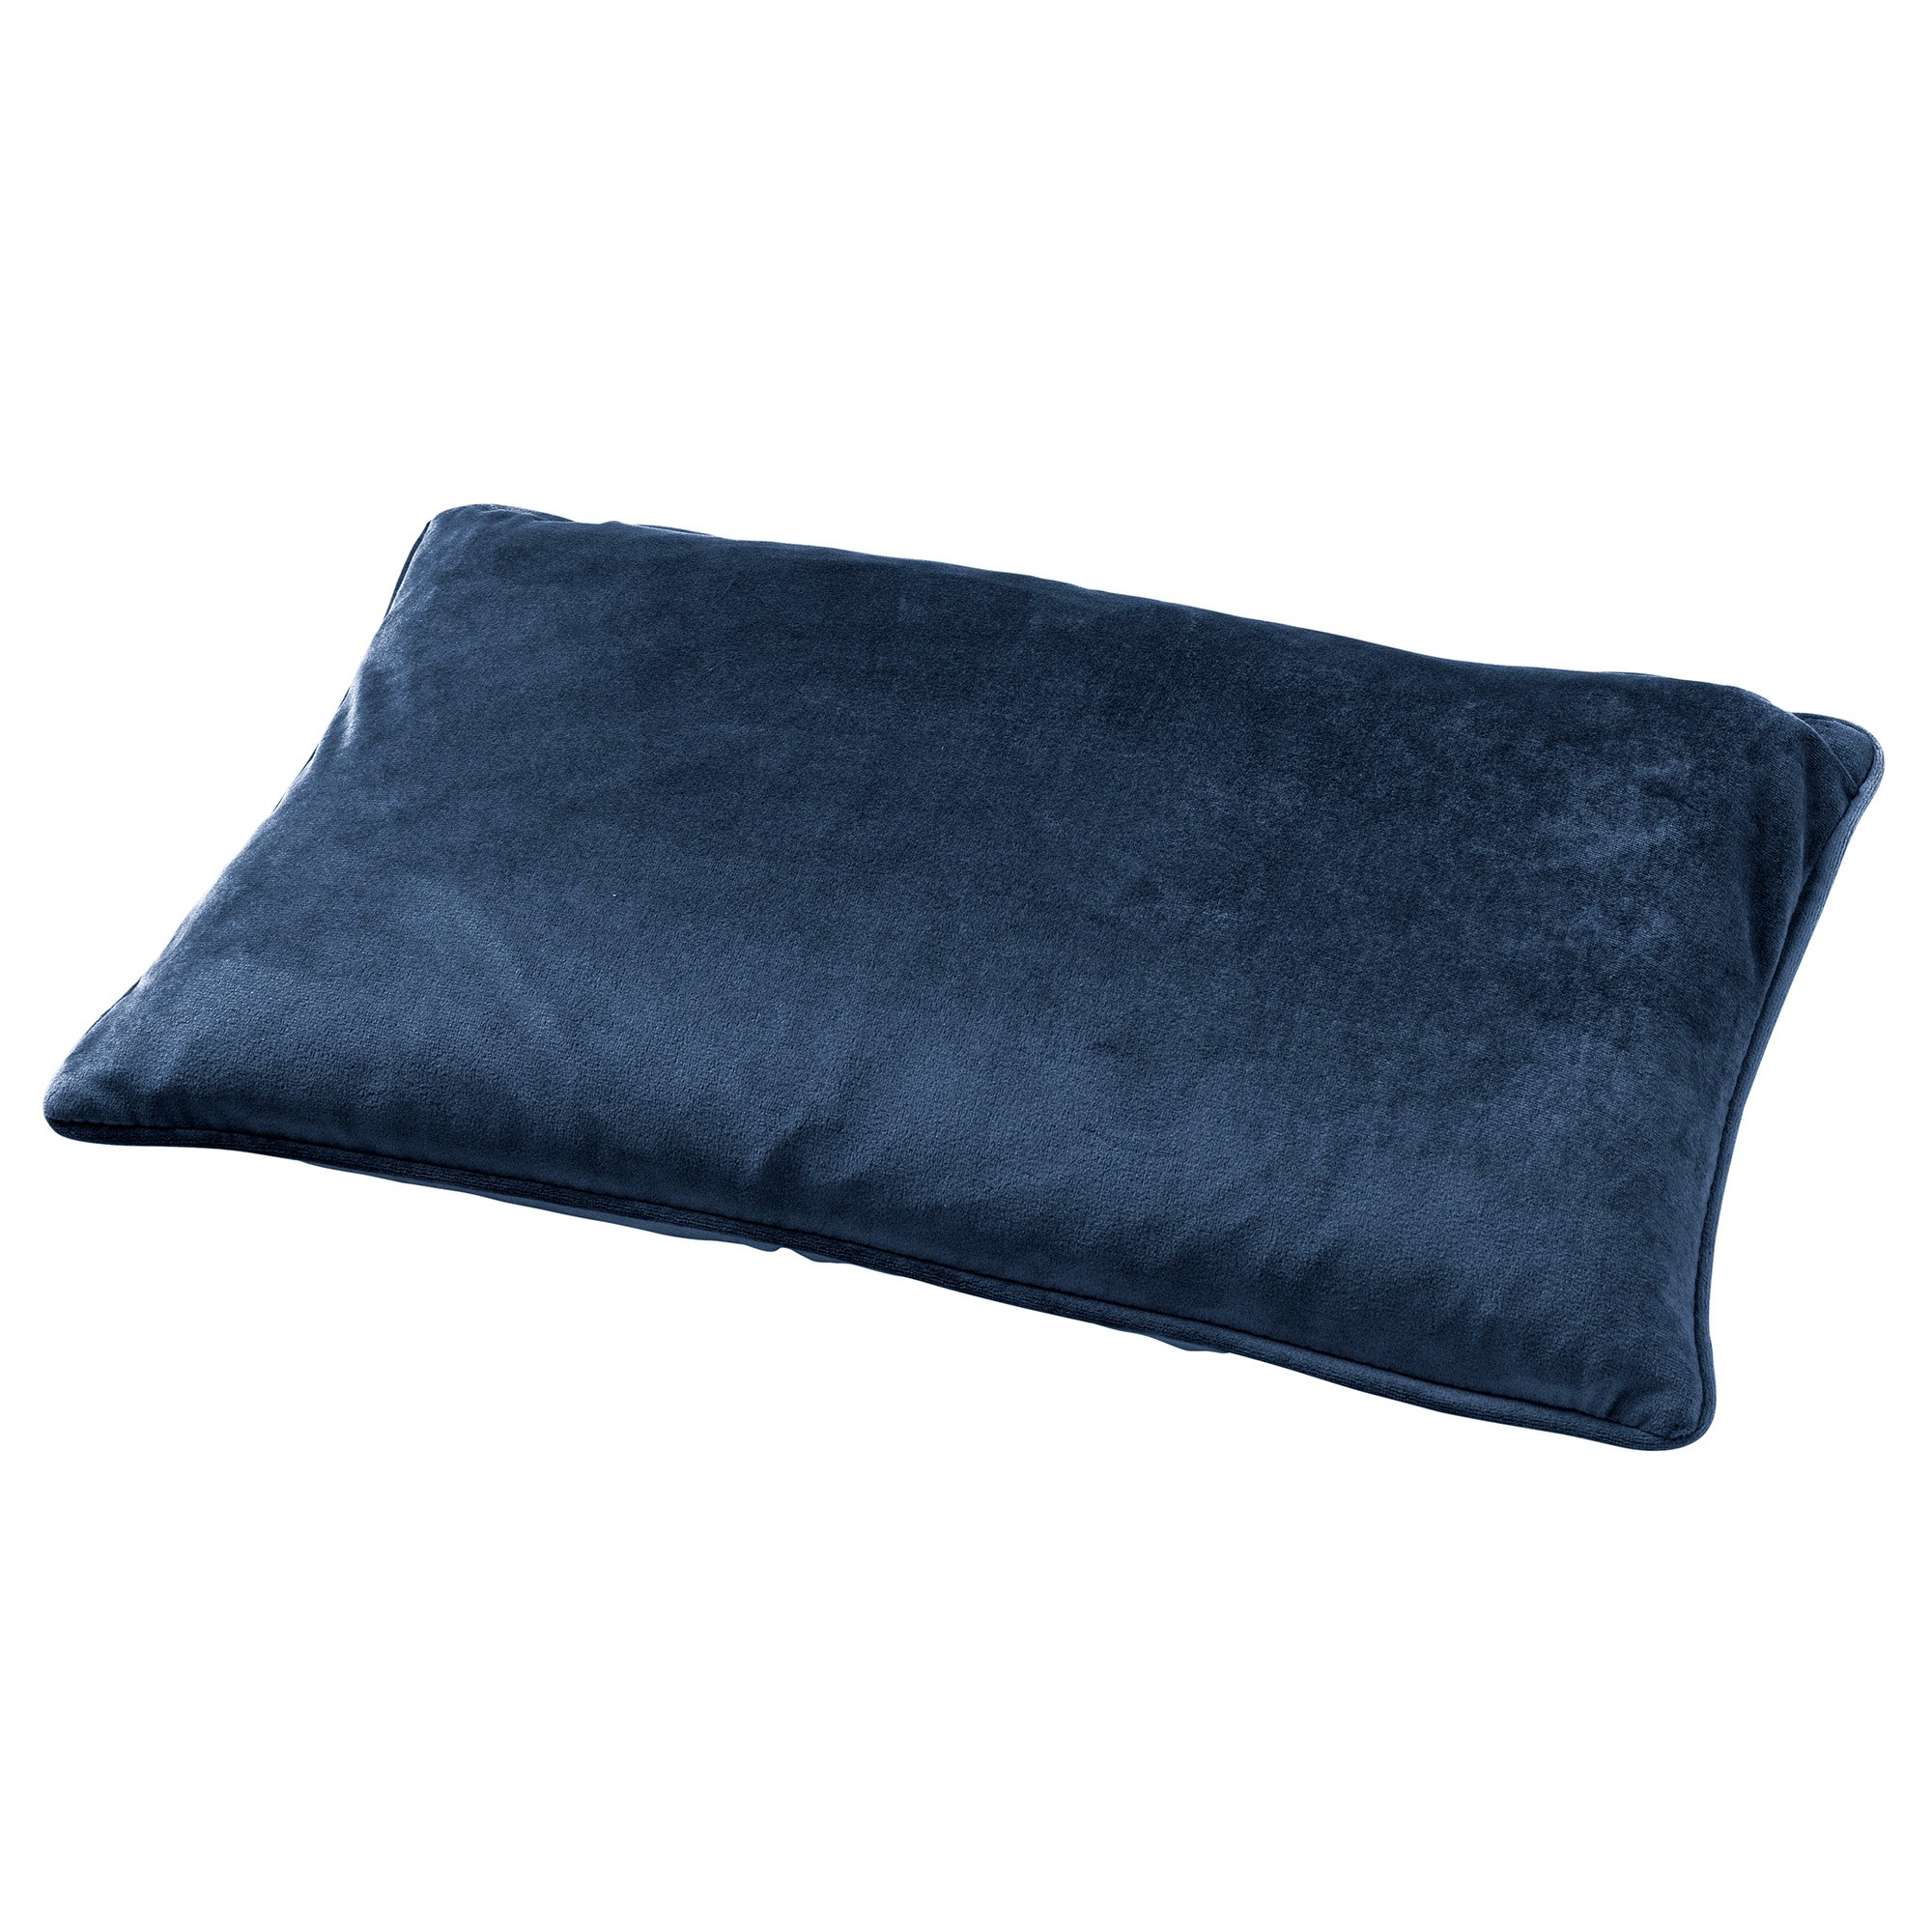 FINN - Sierkussen 30x50 cm - velvet - lendekussen - Insignia Blue - donkerblauw